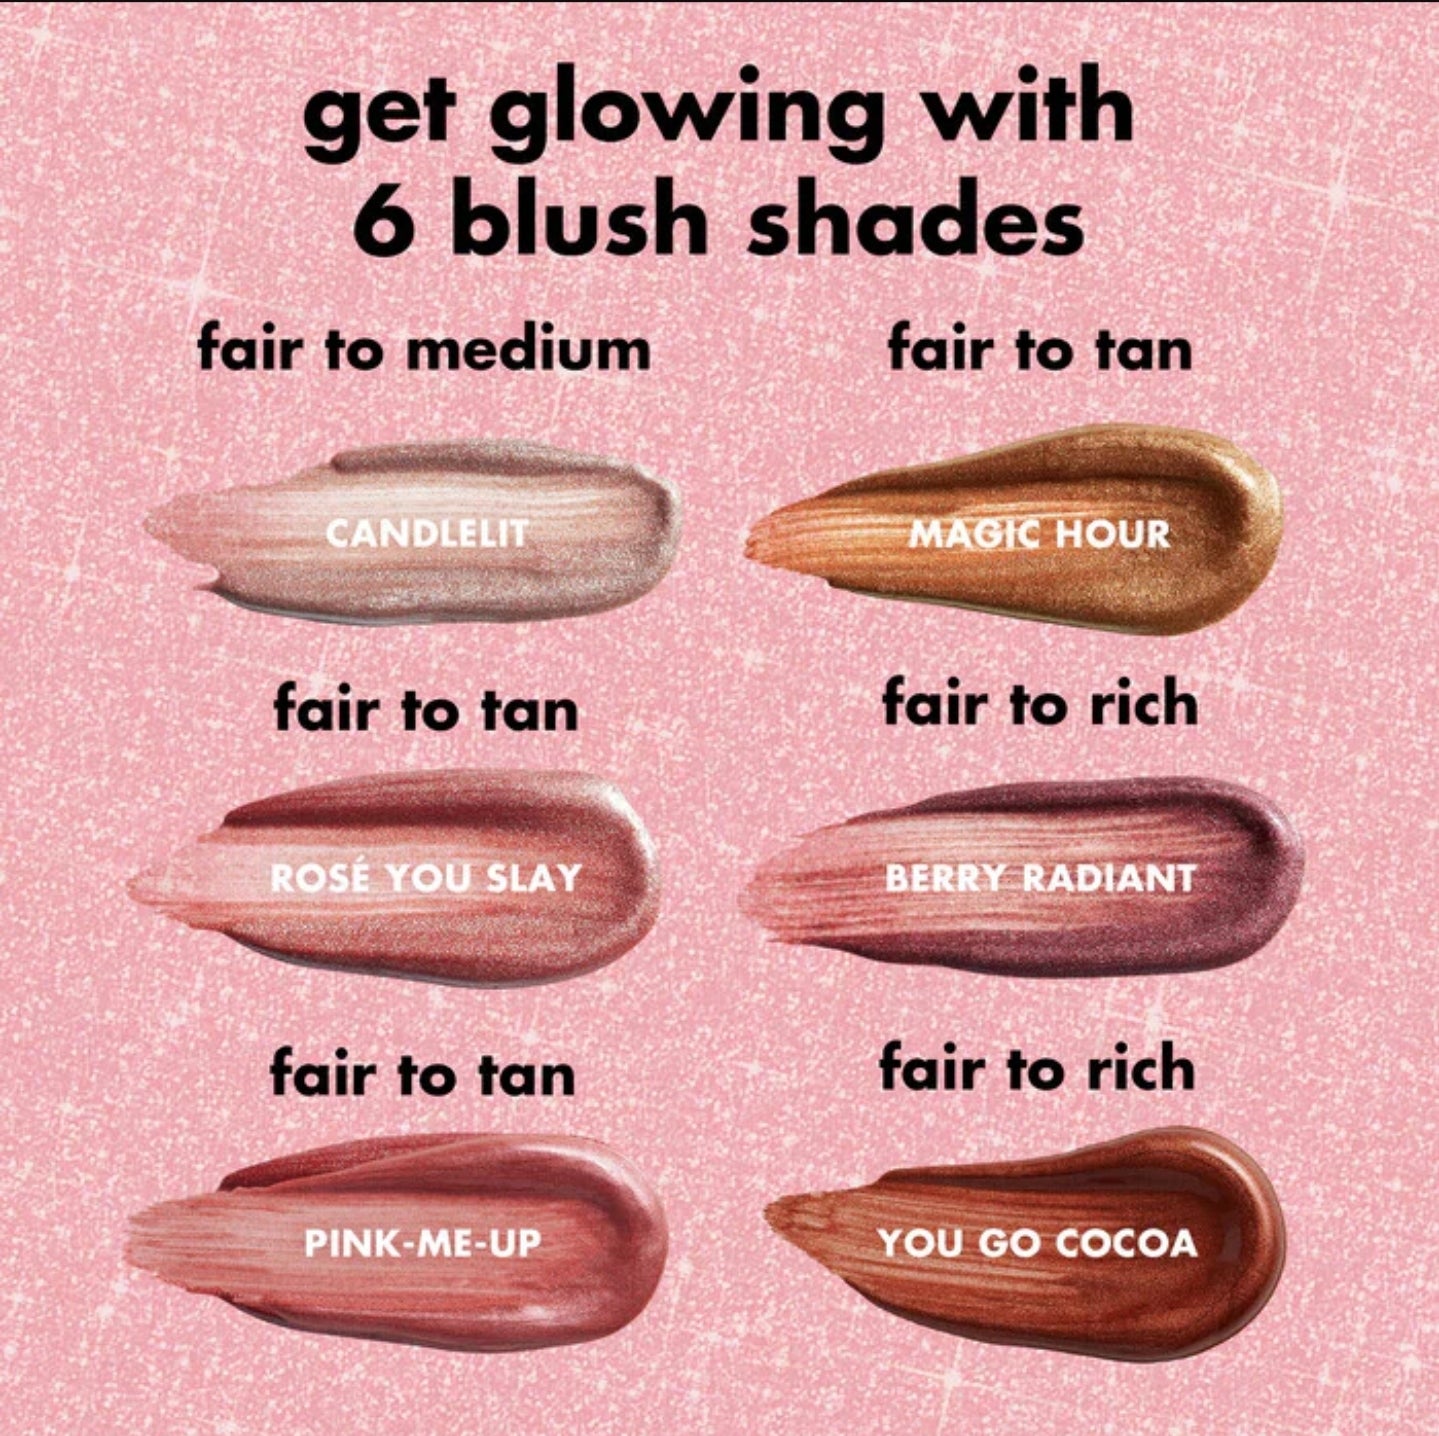 e.l.f Cosmetics Halo Glow Blush Beauty Wand